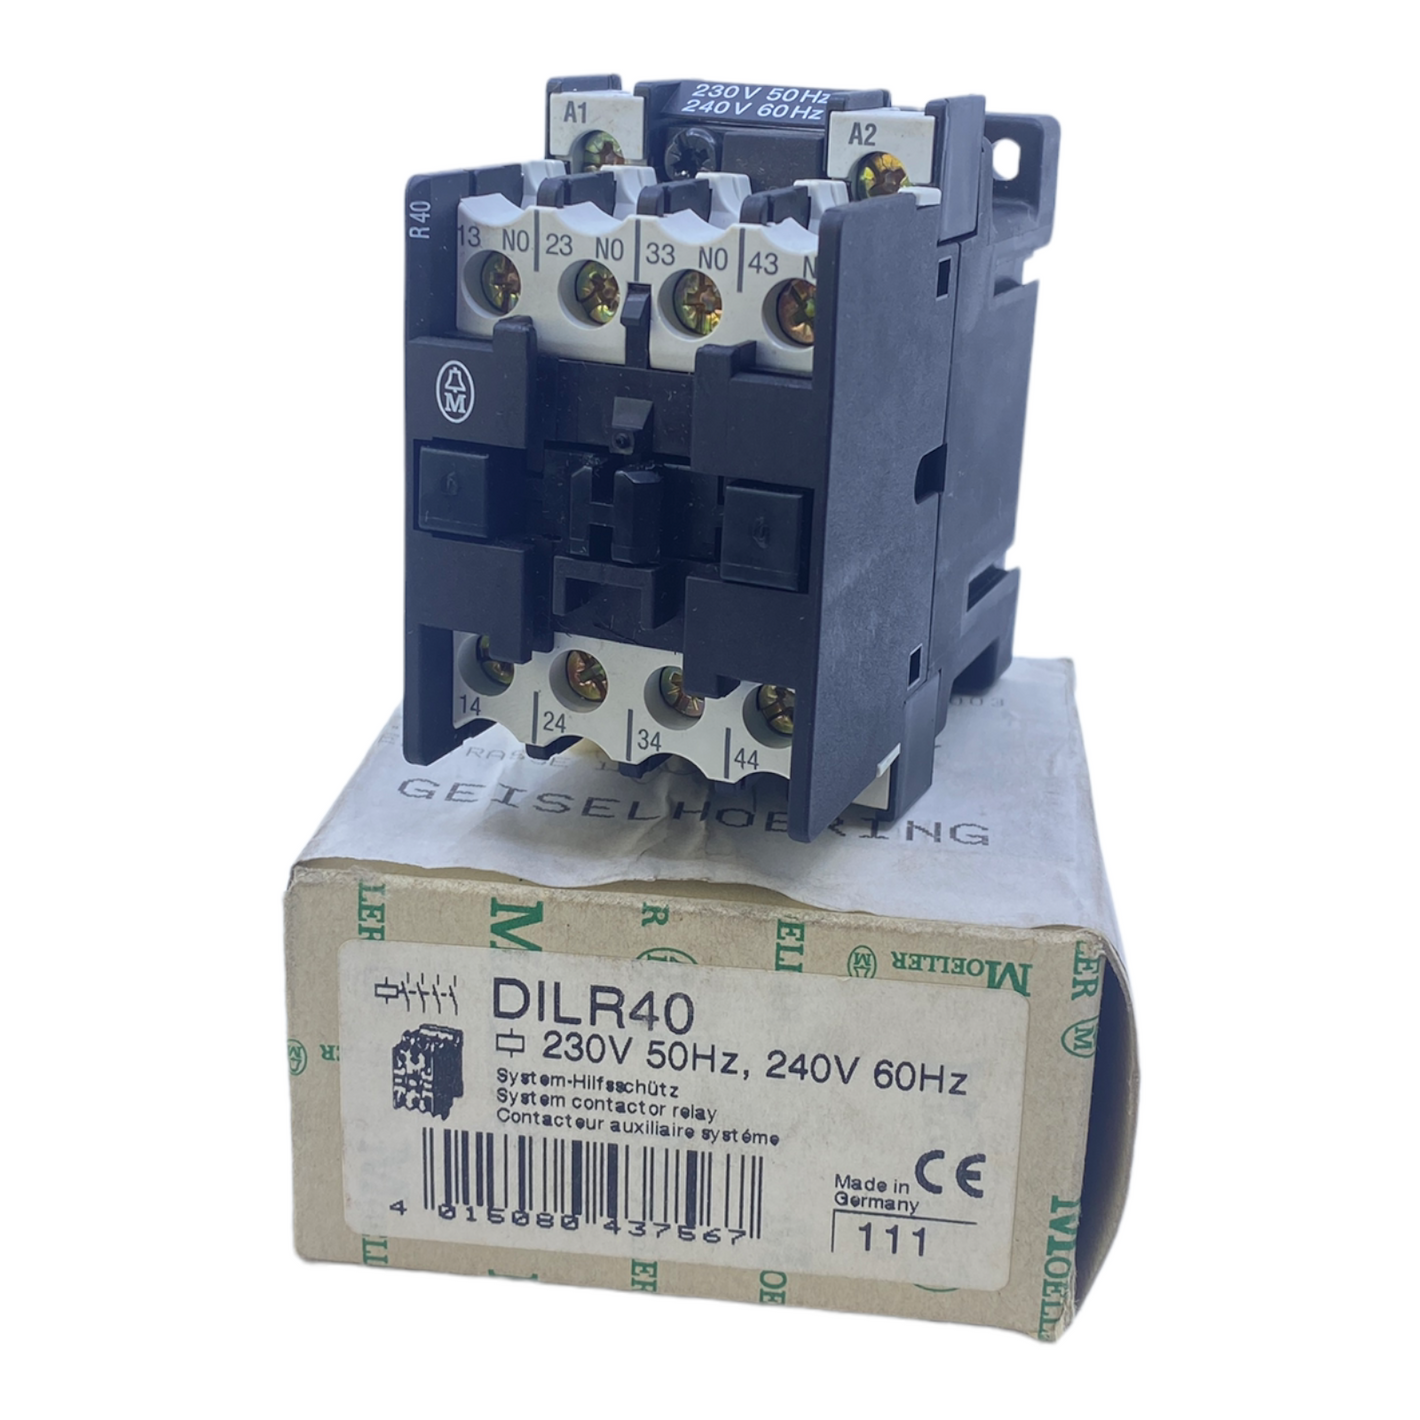 Moeller DILR40 contactor relay 230V 50Hz, 240V 60Hz 